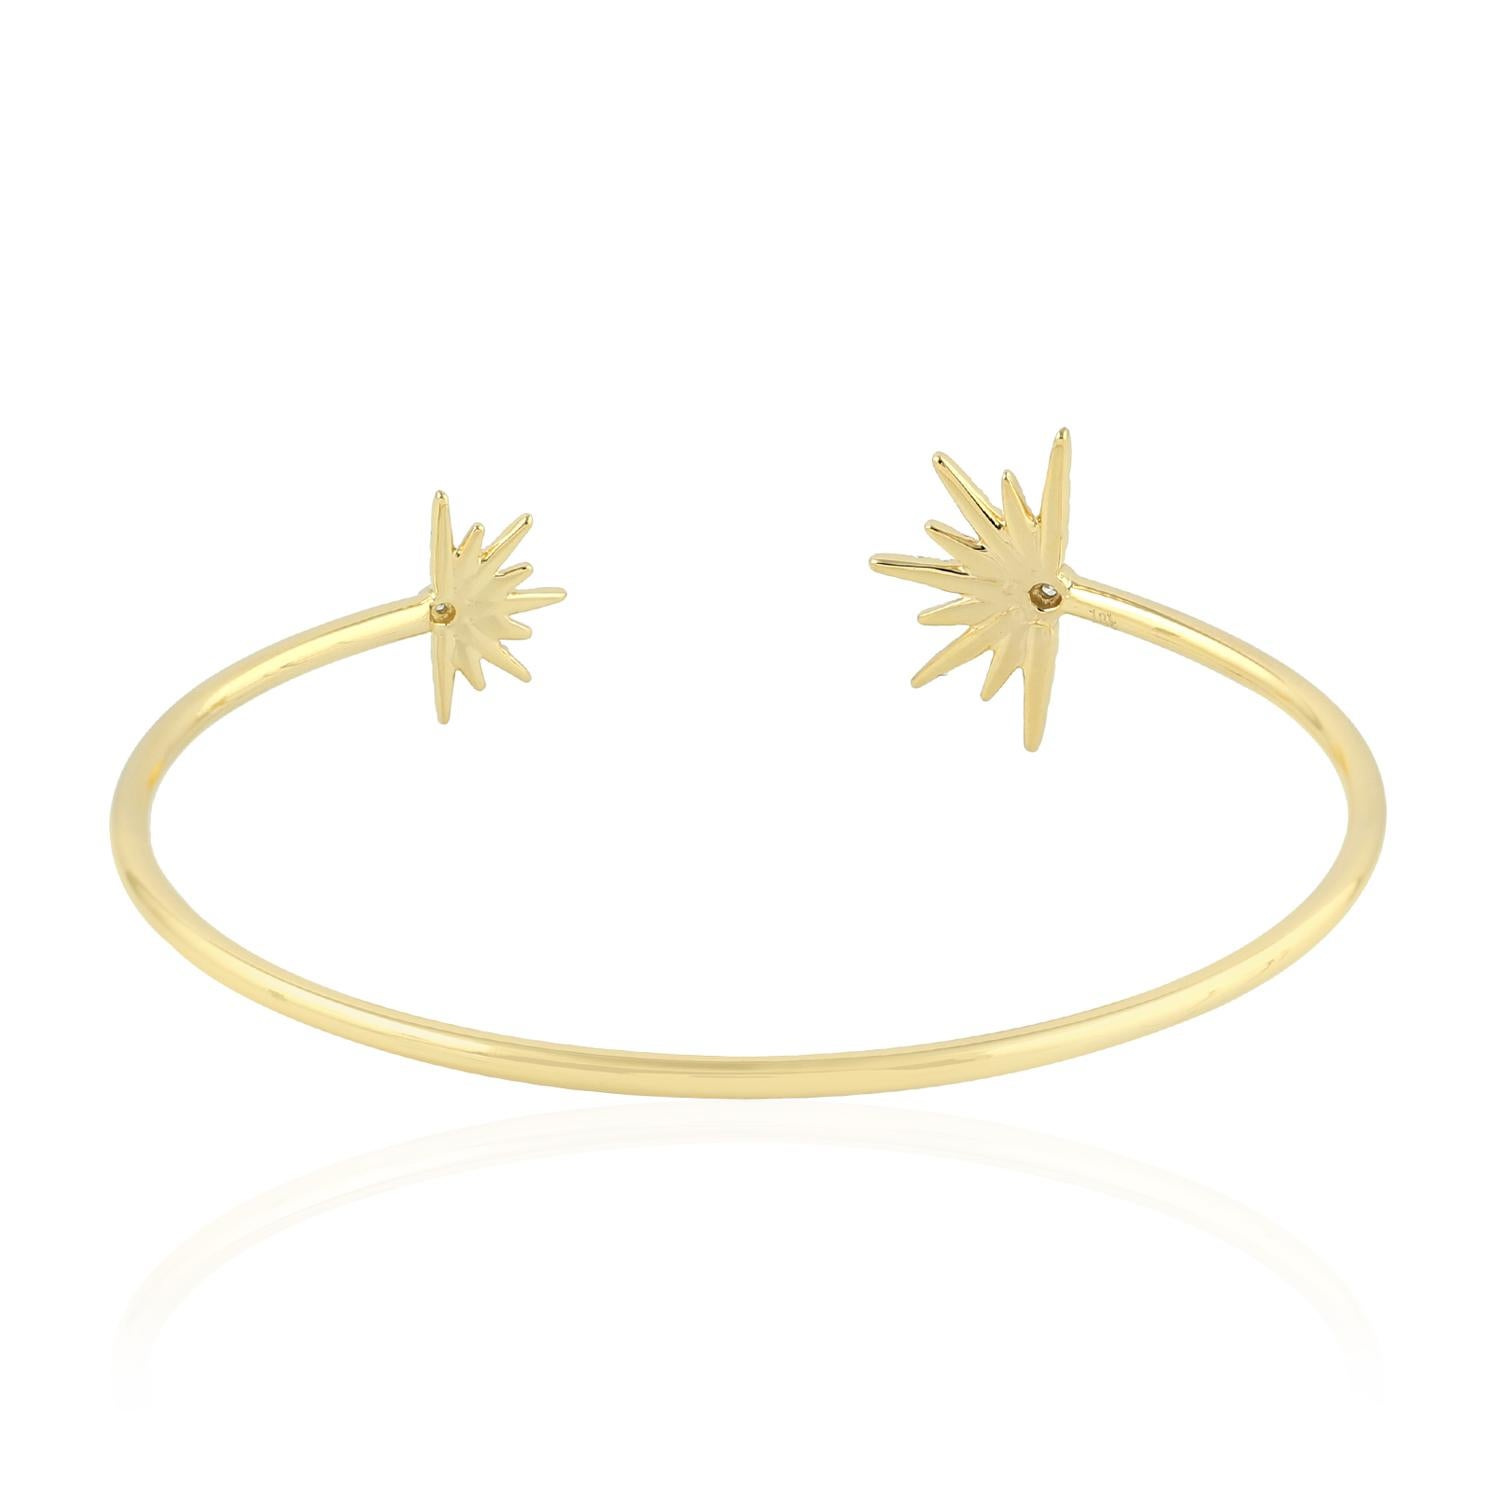 Fabriqués en or 18 carats, ces bracelets sont sertis à la main de 0,30 carats de diamants étincelants. Disponible en or rose, jaune et blanc. Voir les autres pièces assorties qui complètent la collection Sun.

SUIVRE  La vitrine de MEGHNA JEWELS